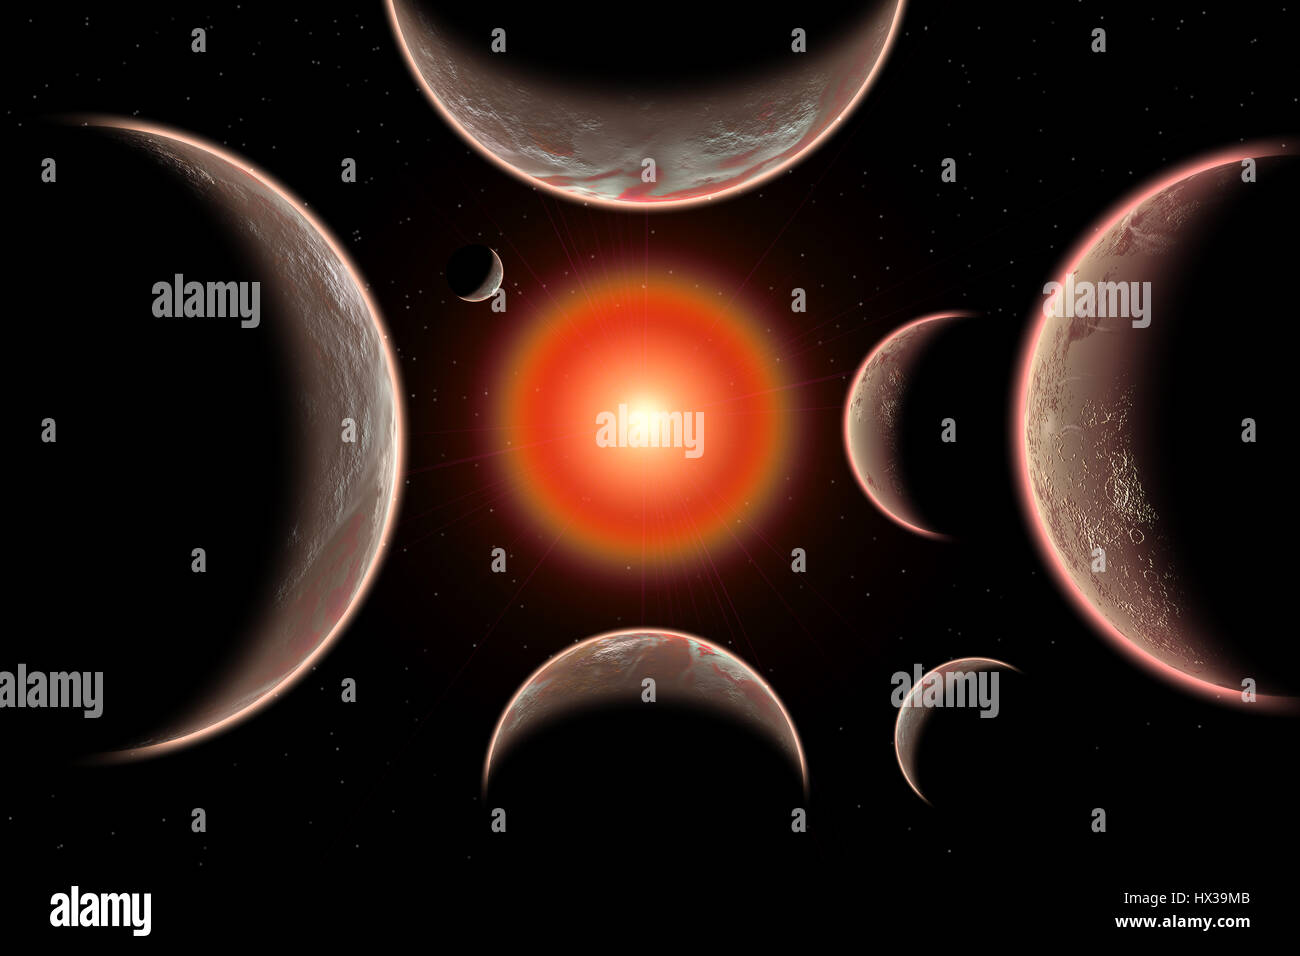 El sistema de estrellas trapense que consta de 7 exoplanetas. Foto de stock